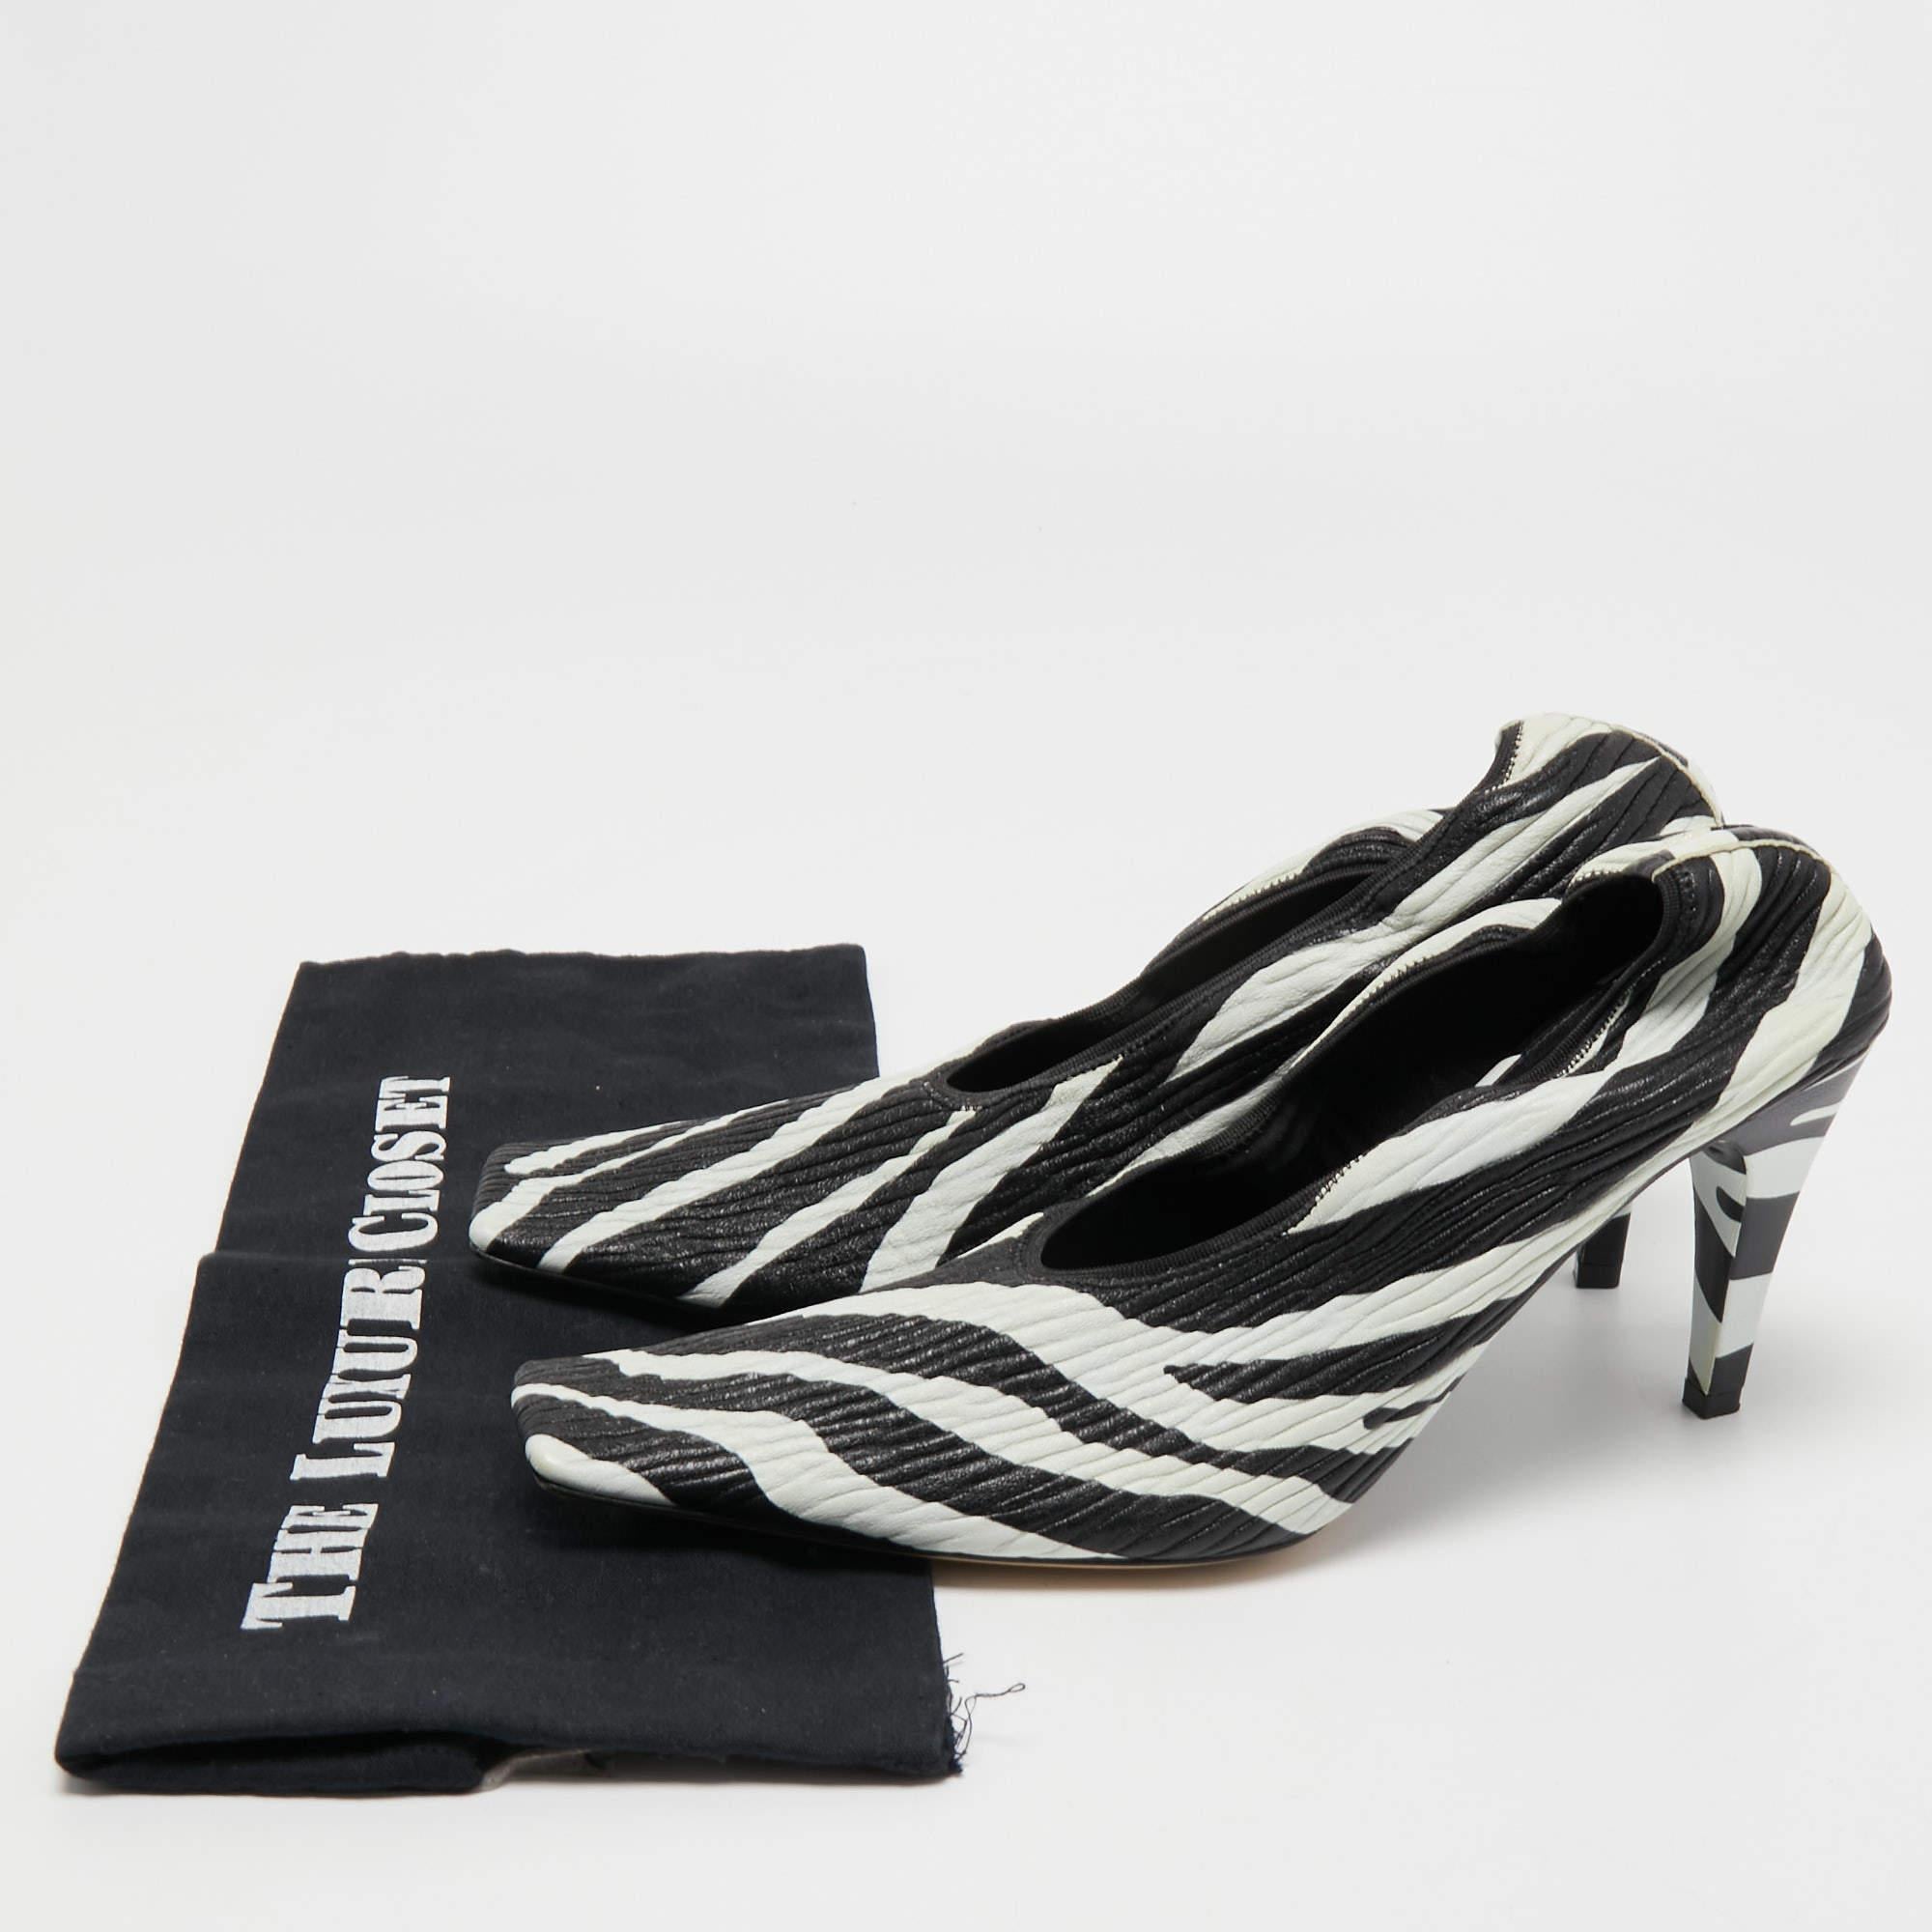 Bottega Veneta Black/White Zebra Print Leather Pumps Size 39 5